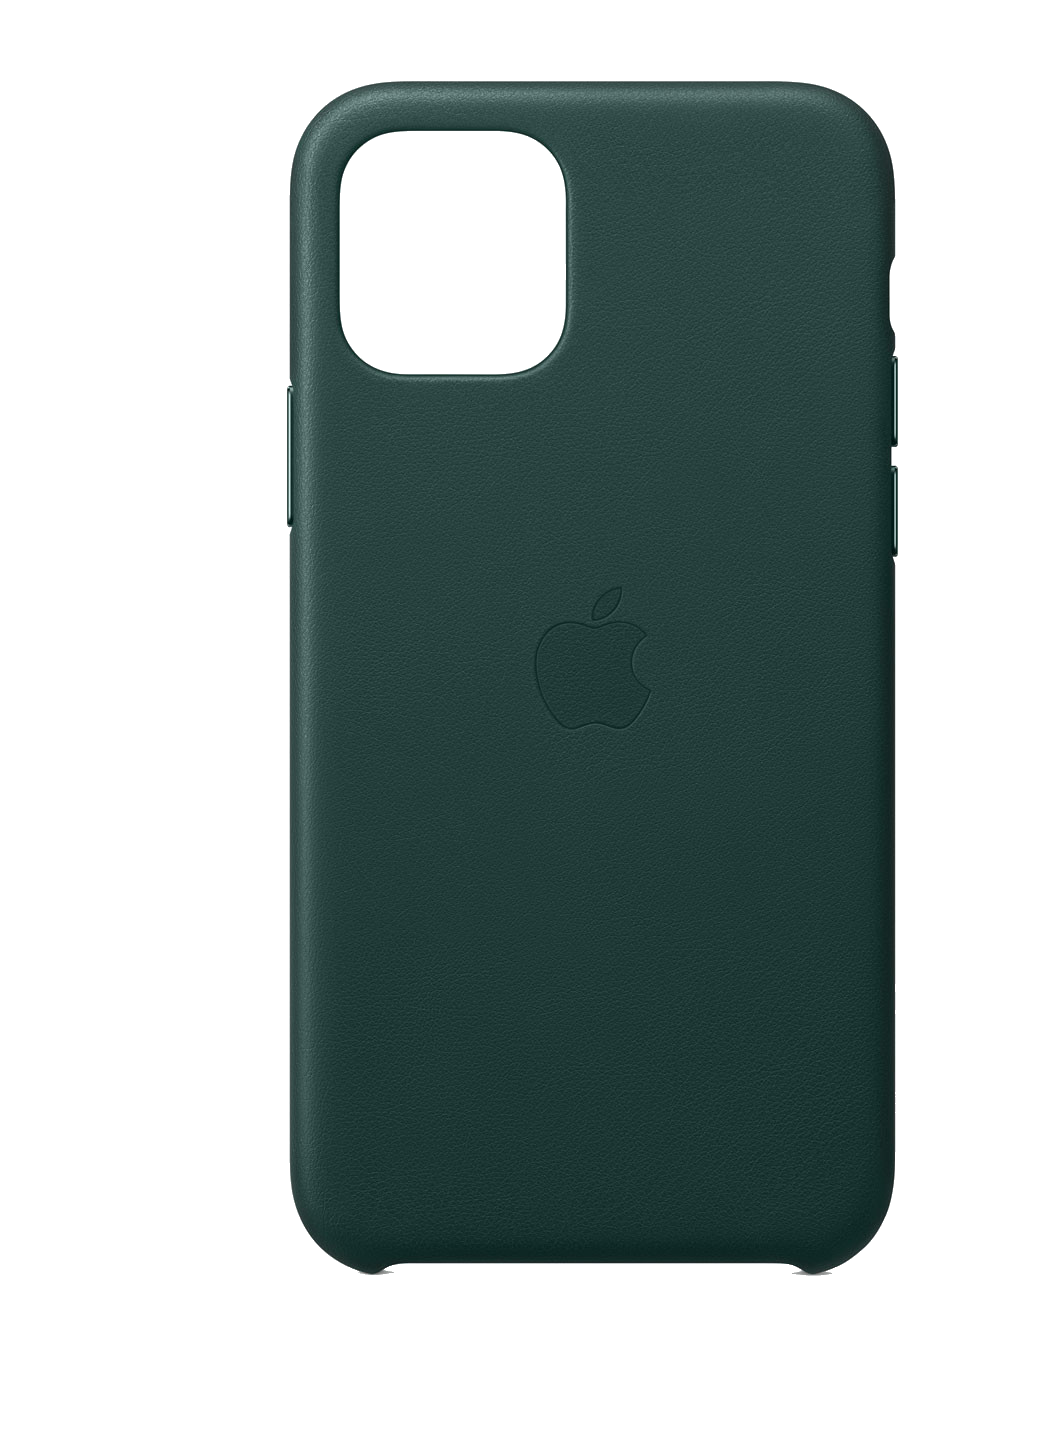 Apple Leder Case (iPhone 11 Pro) grün - Onhe Vertrag